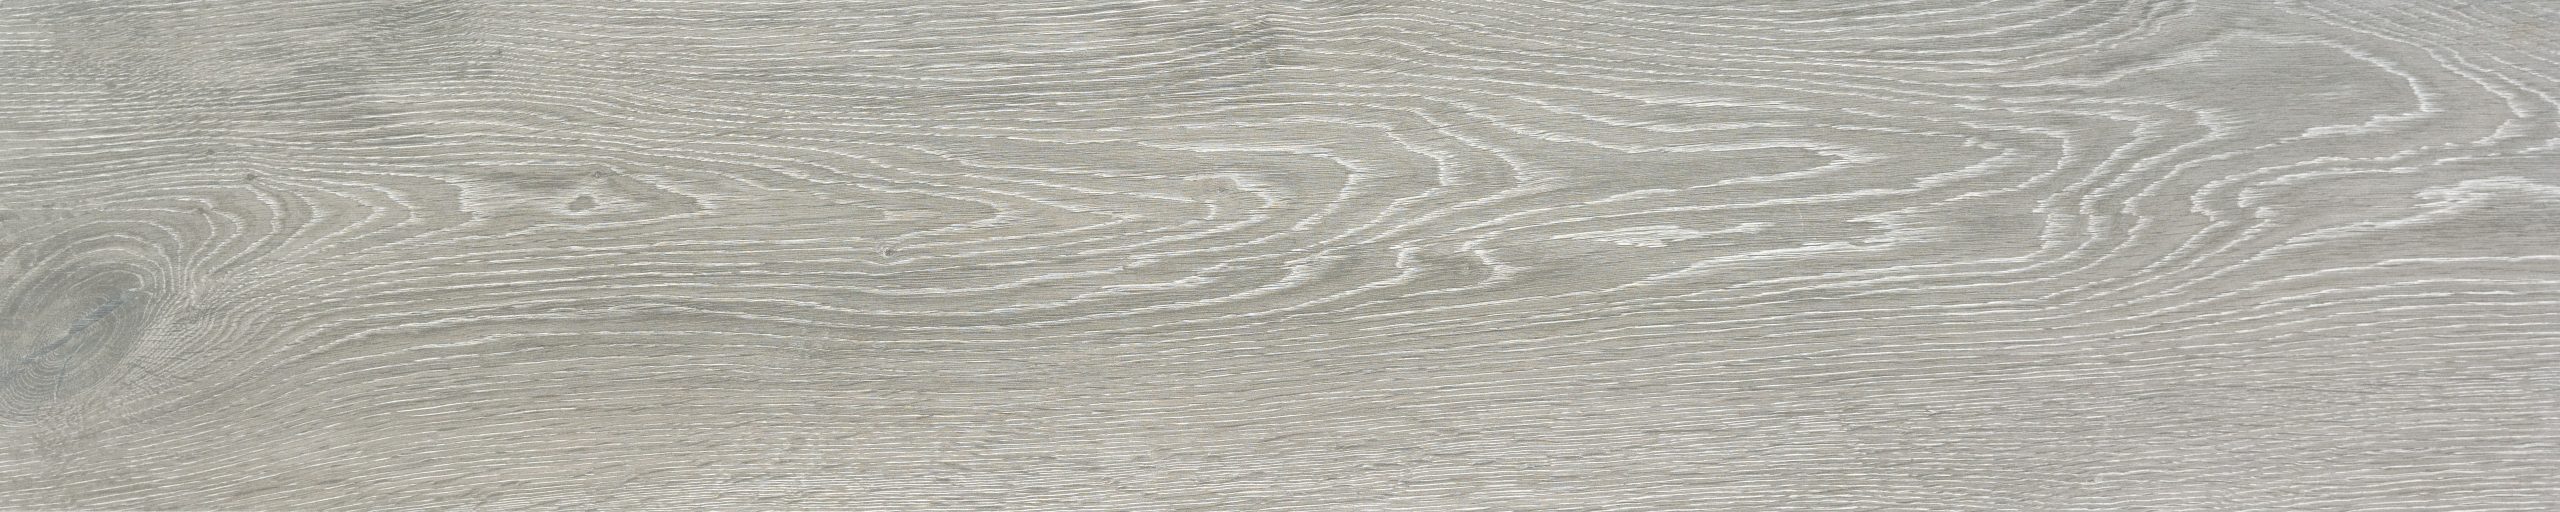 madera porcelanica Isengard 30x150cm in out interior exterior antislip pavimento porcelanico